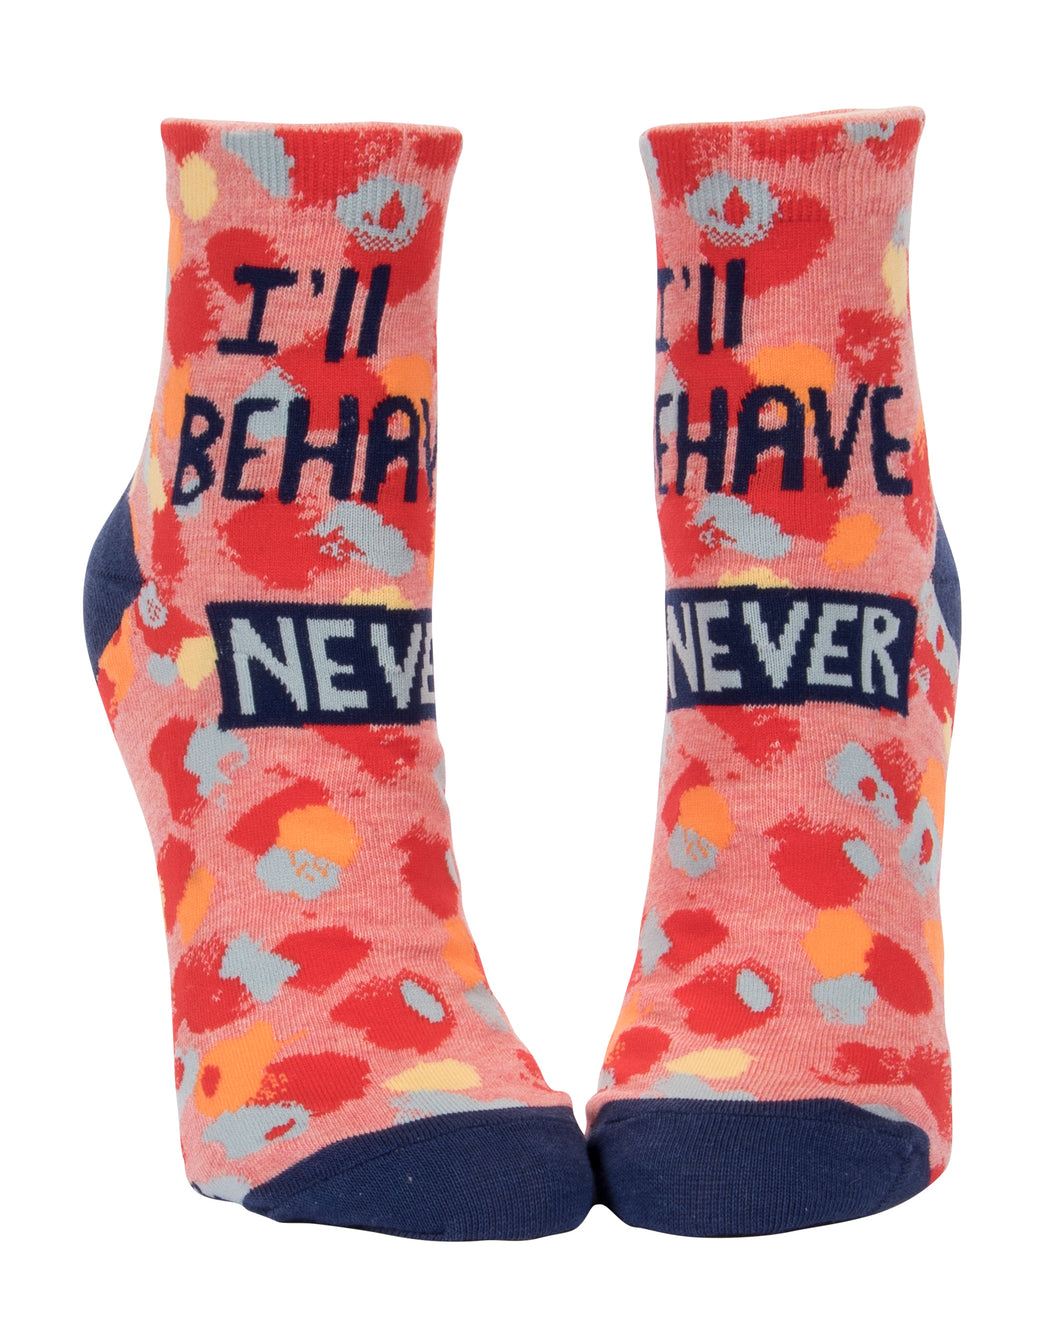 I'll Behave Never - Women's Ankle Socks